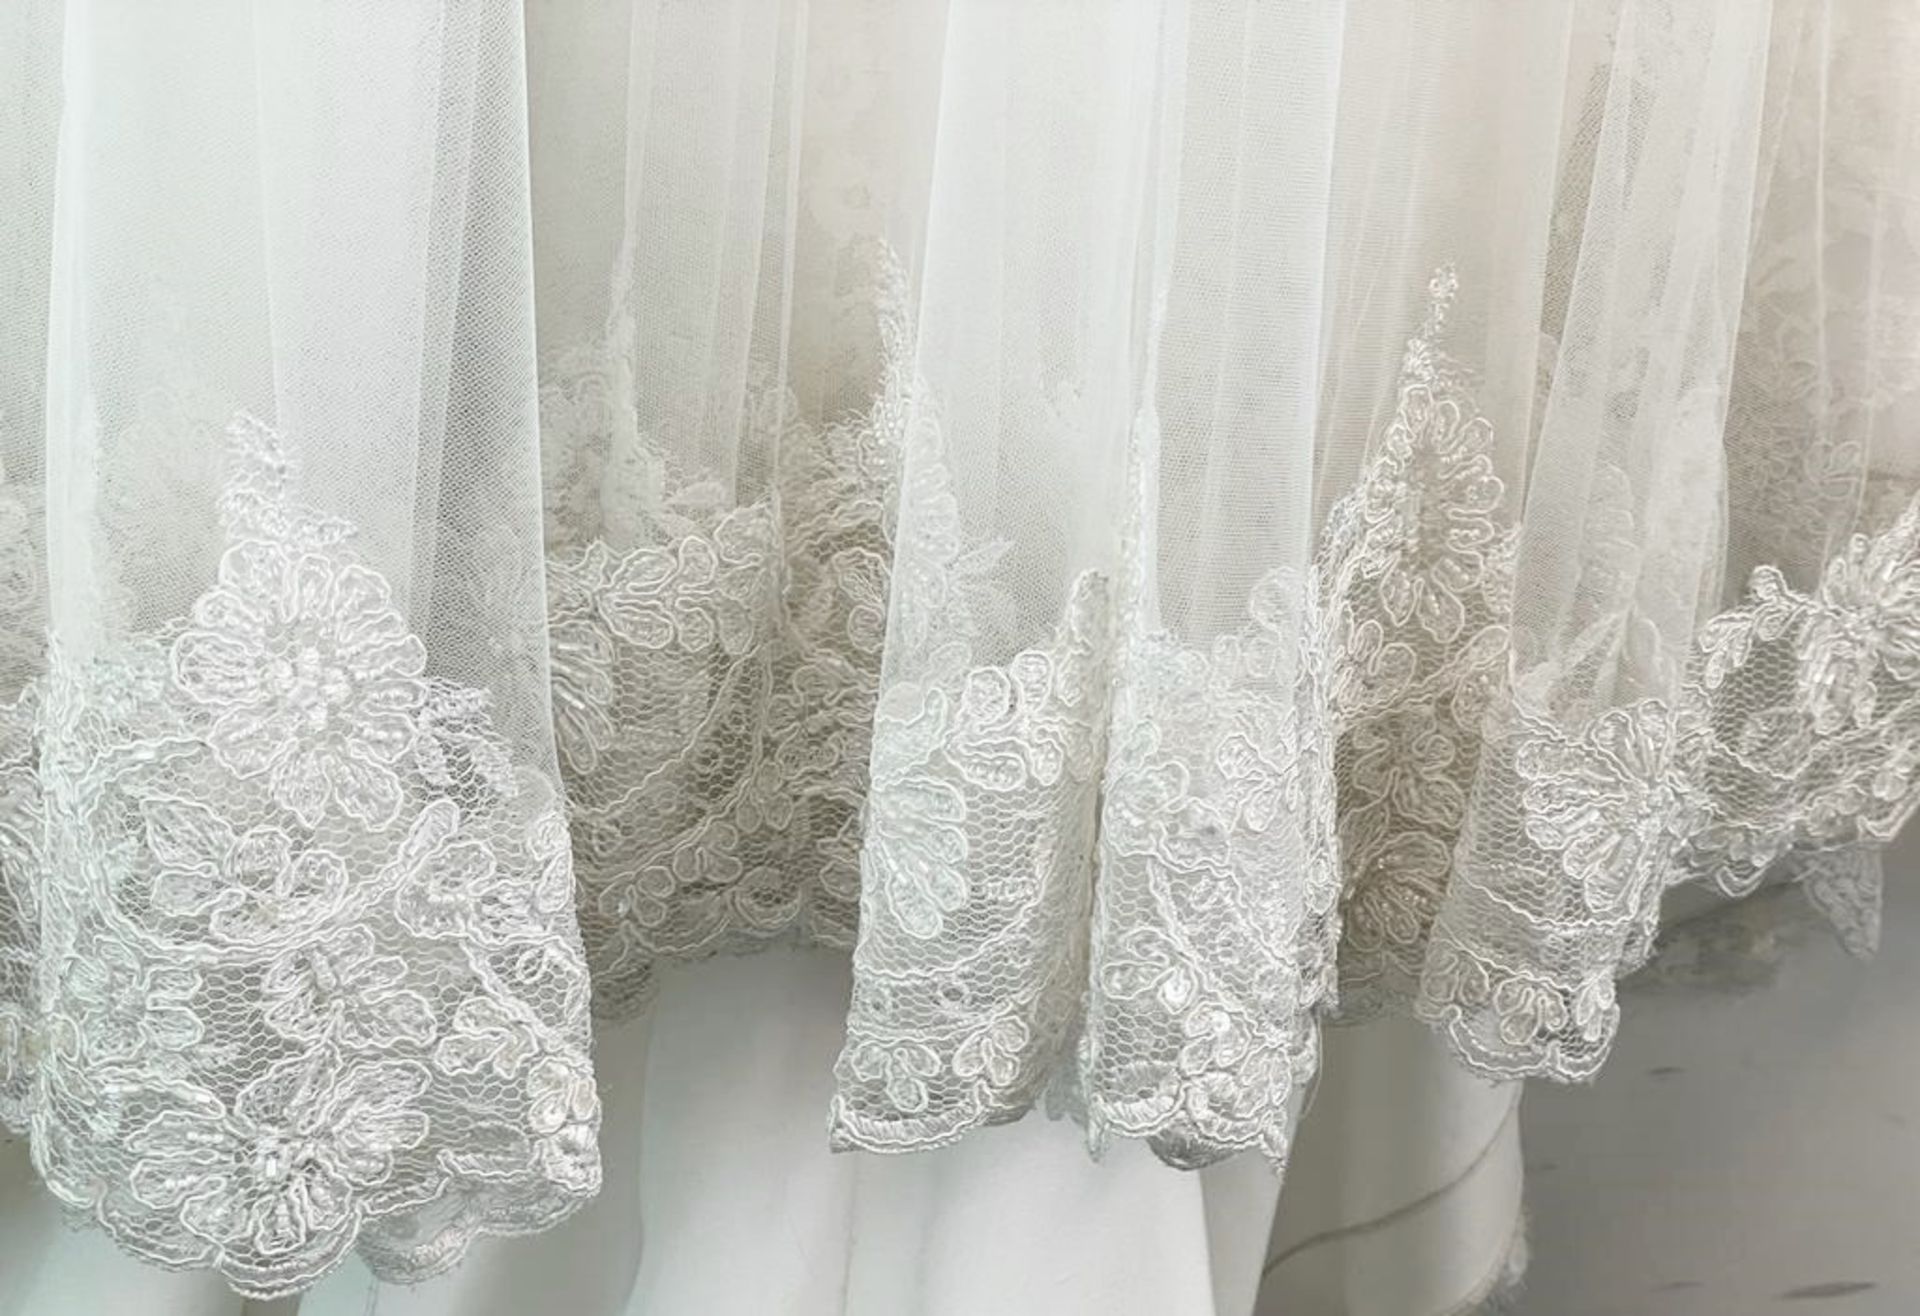 1 x LUSAN MANDONGUS 'Radella' Designer Wedding Dress Bridal Gown - Size: UK 16 - Original RRP £1,560 - Image 6 of 13